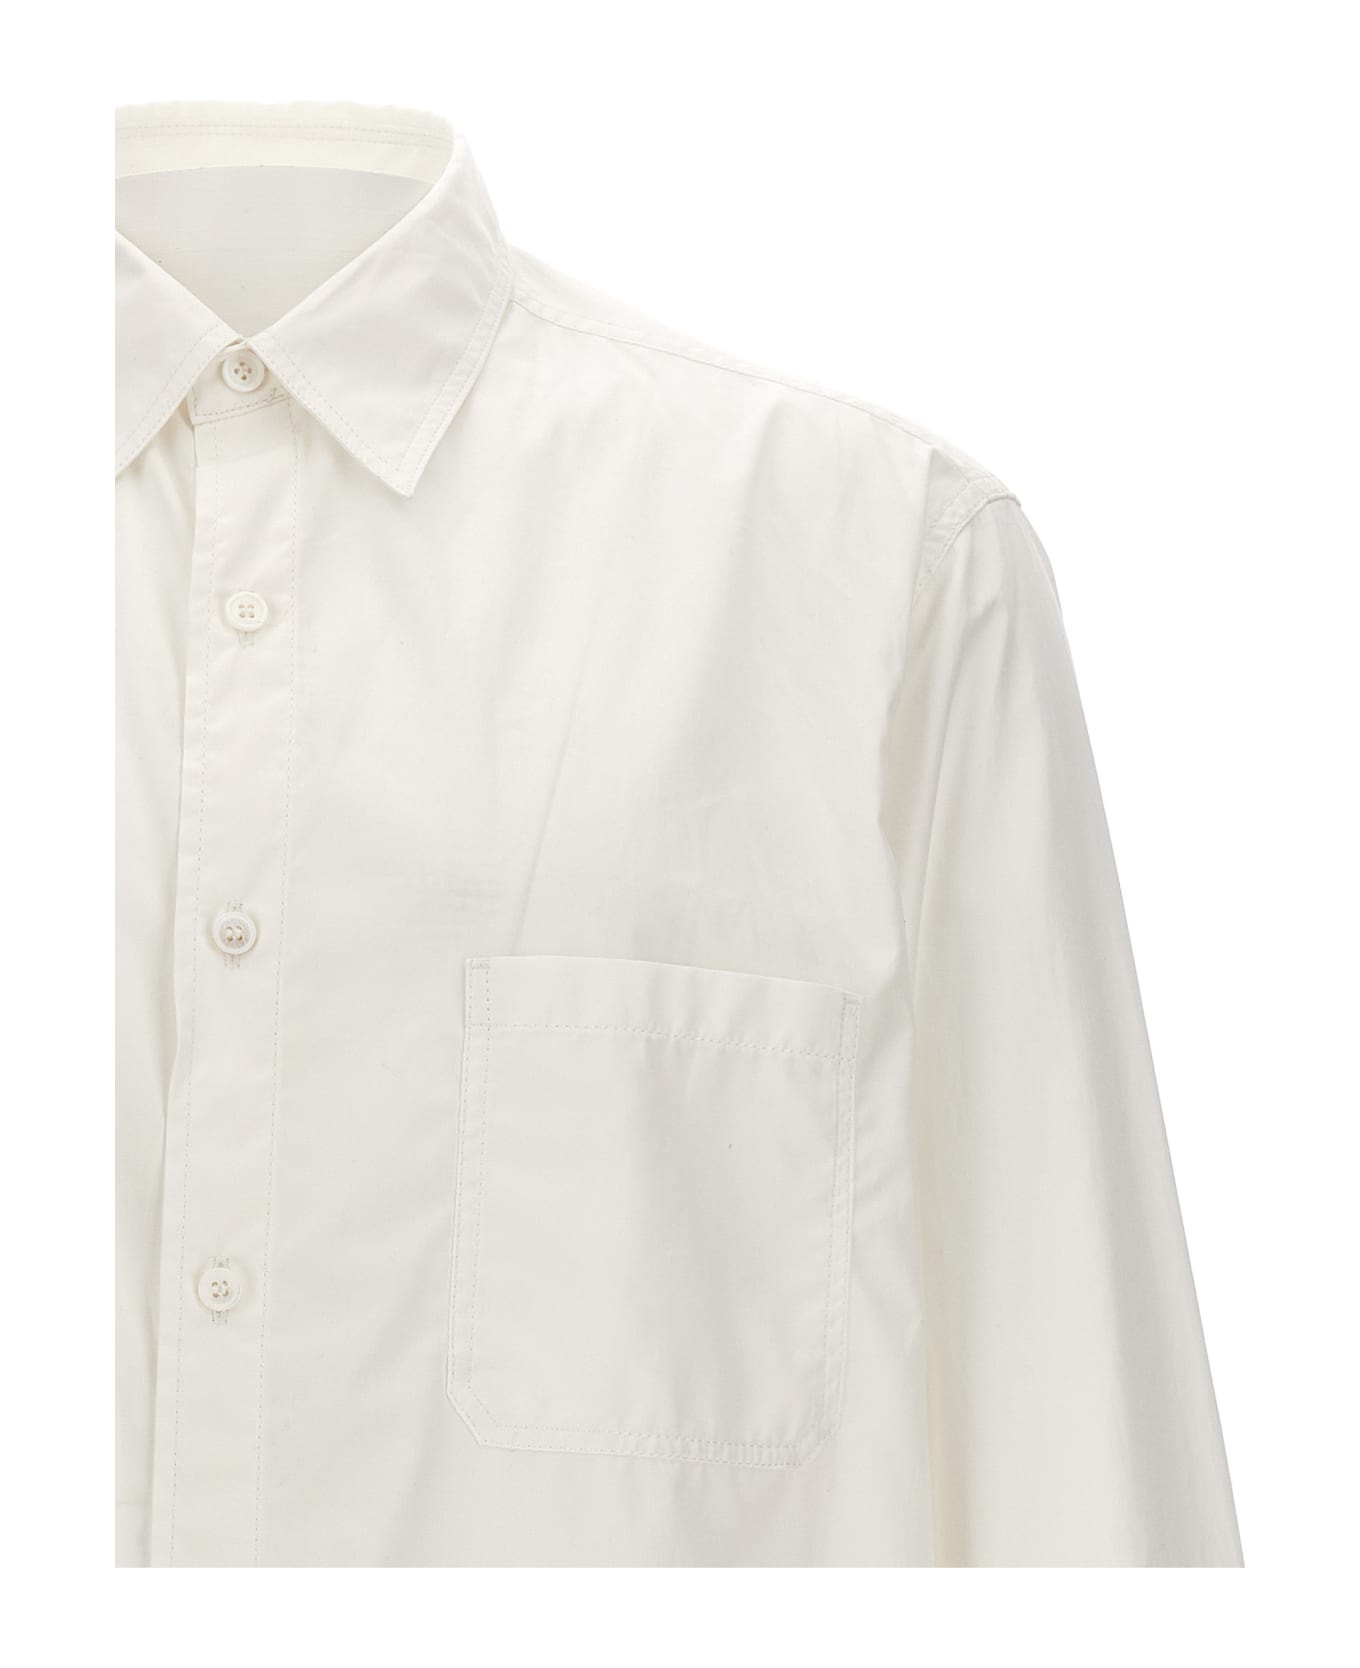 Yohji Yamamoto 'z-standard Big Chain Stitch' Shirt - White シャツ